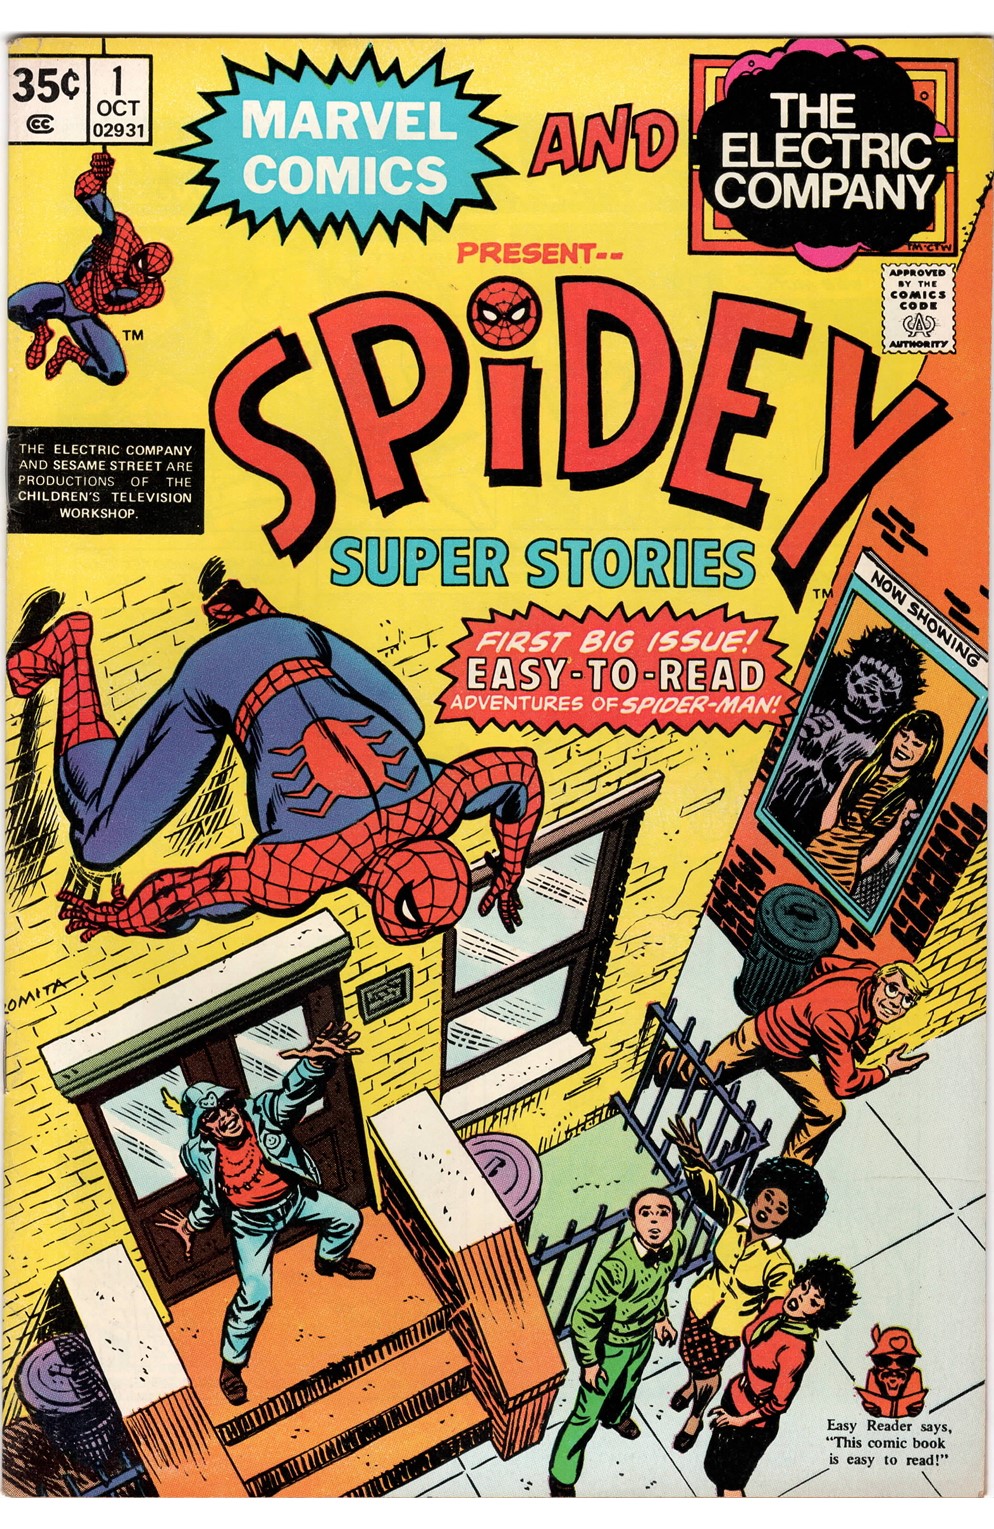 Spidey Super-Stories #01